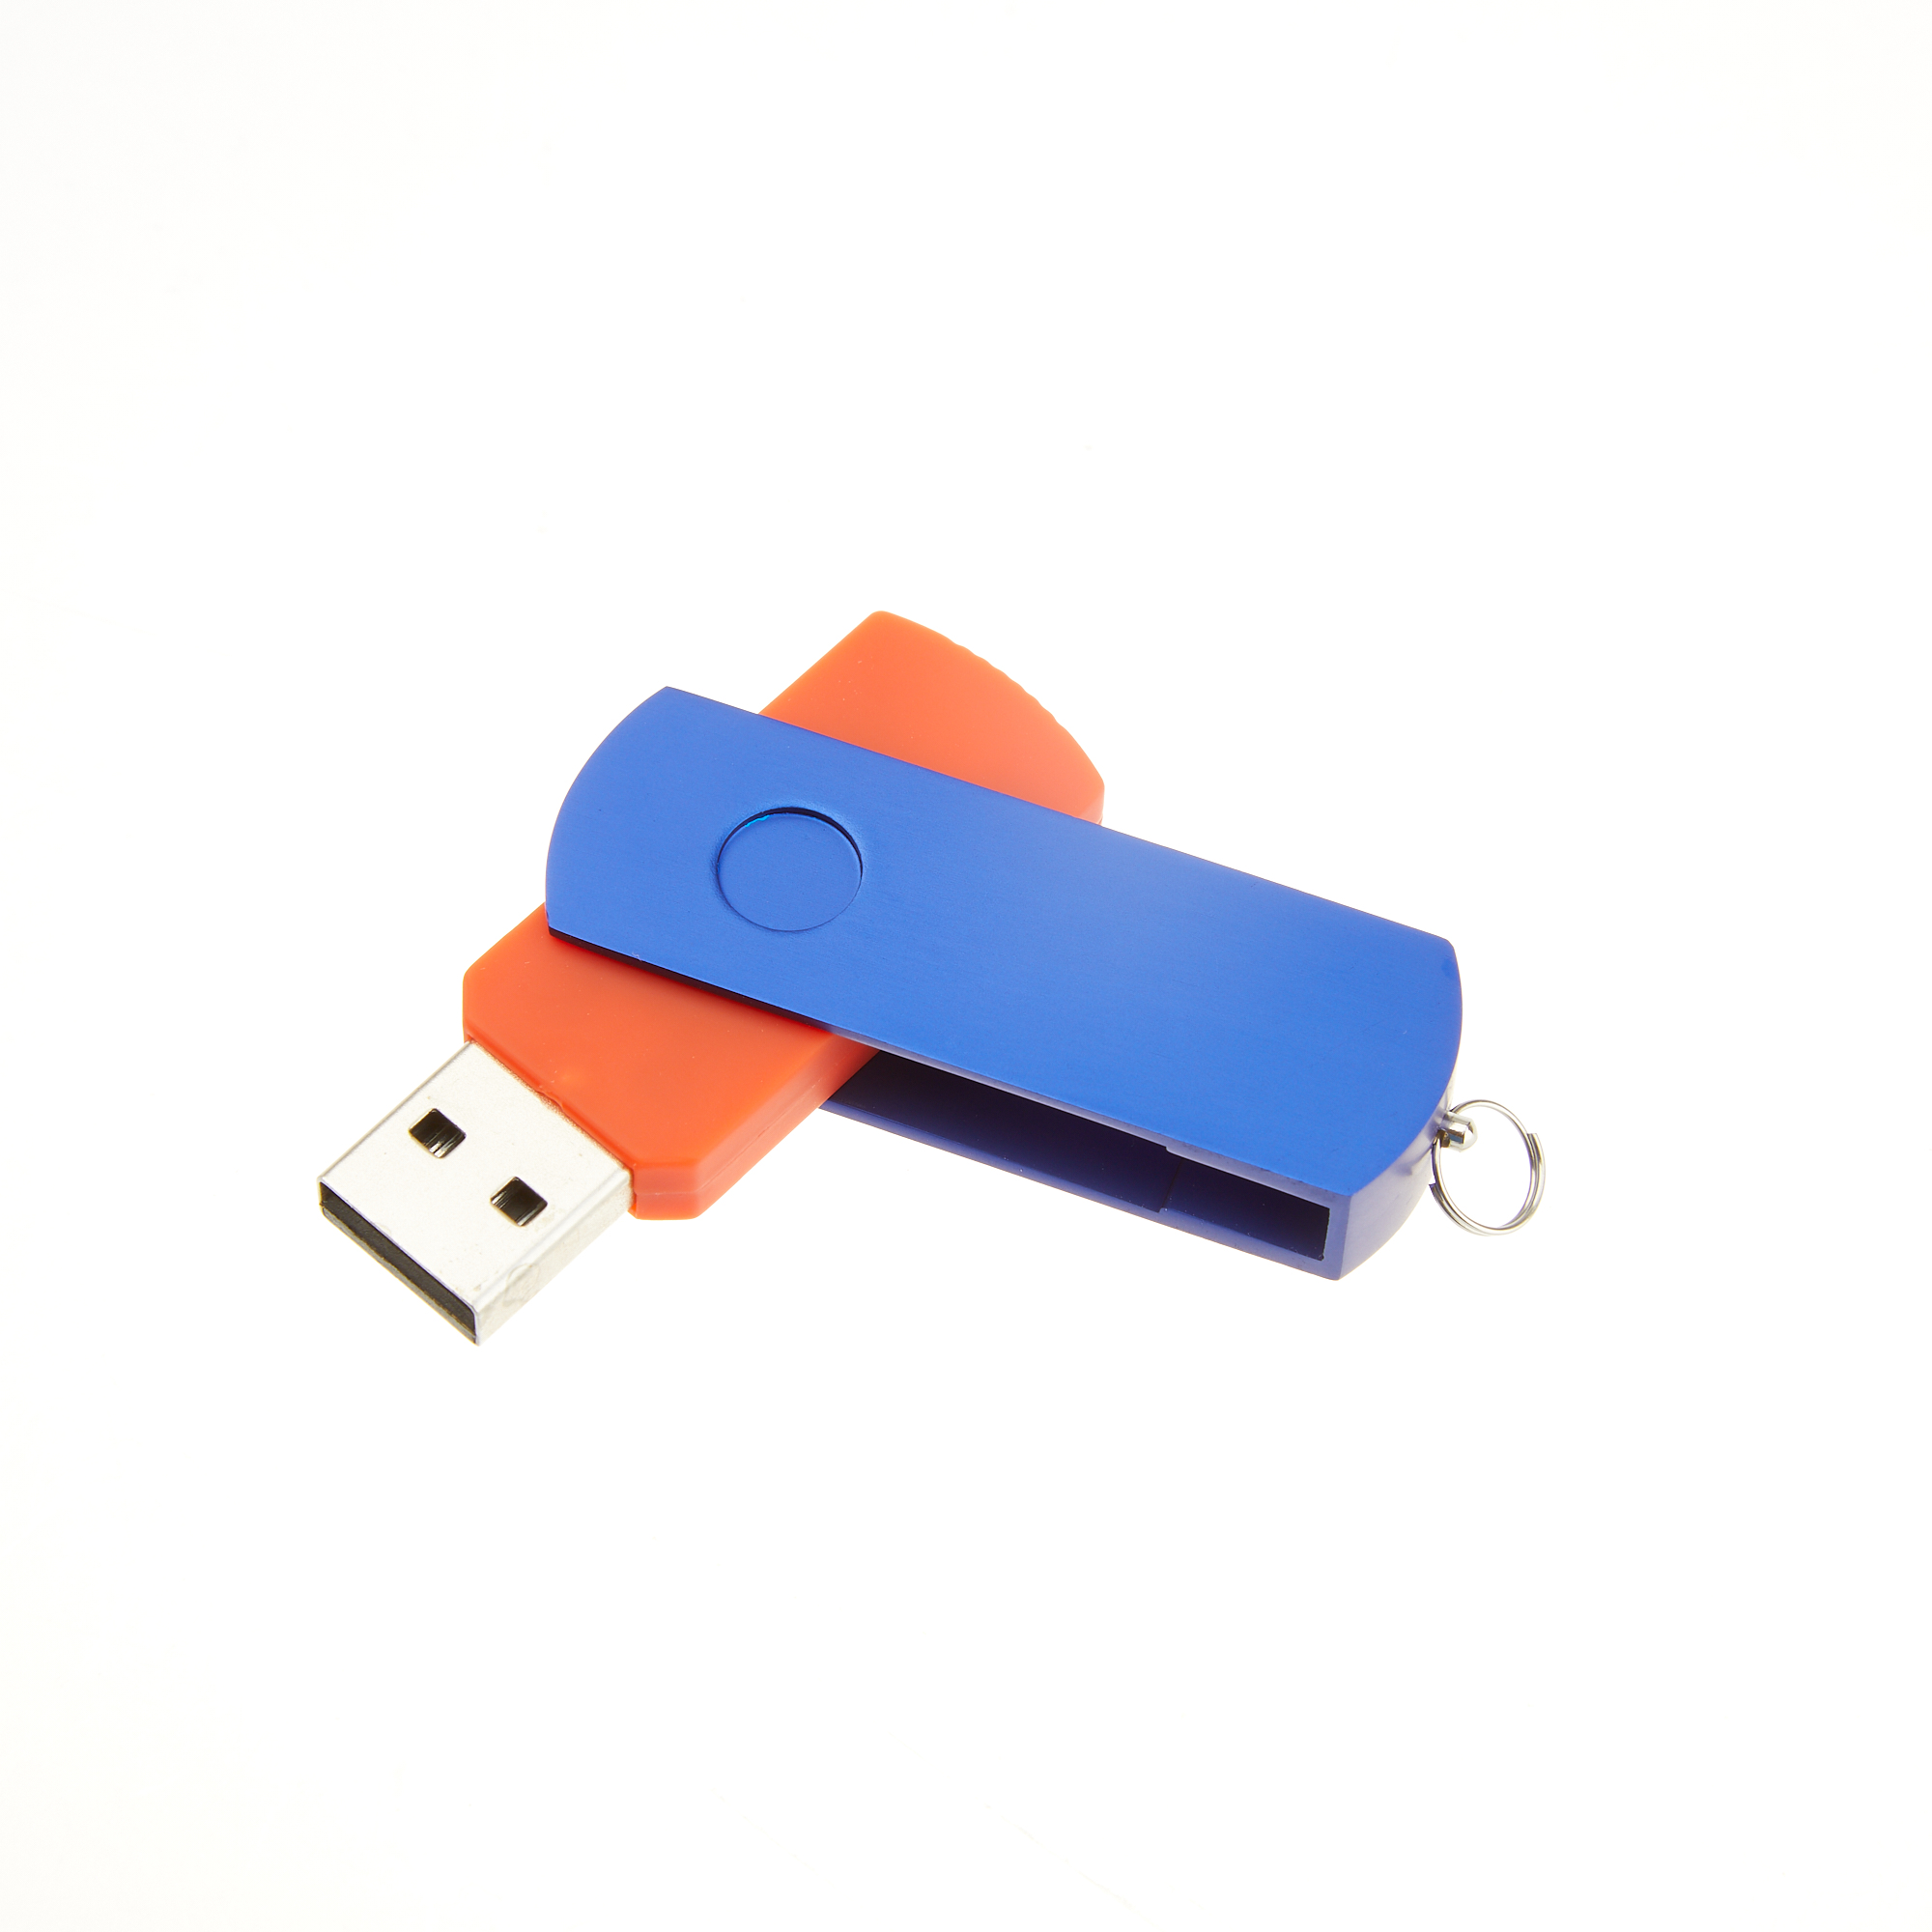 Цветная скоба для USB-флешки модель 107, цвет синий